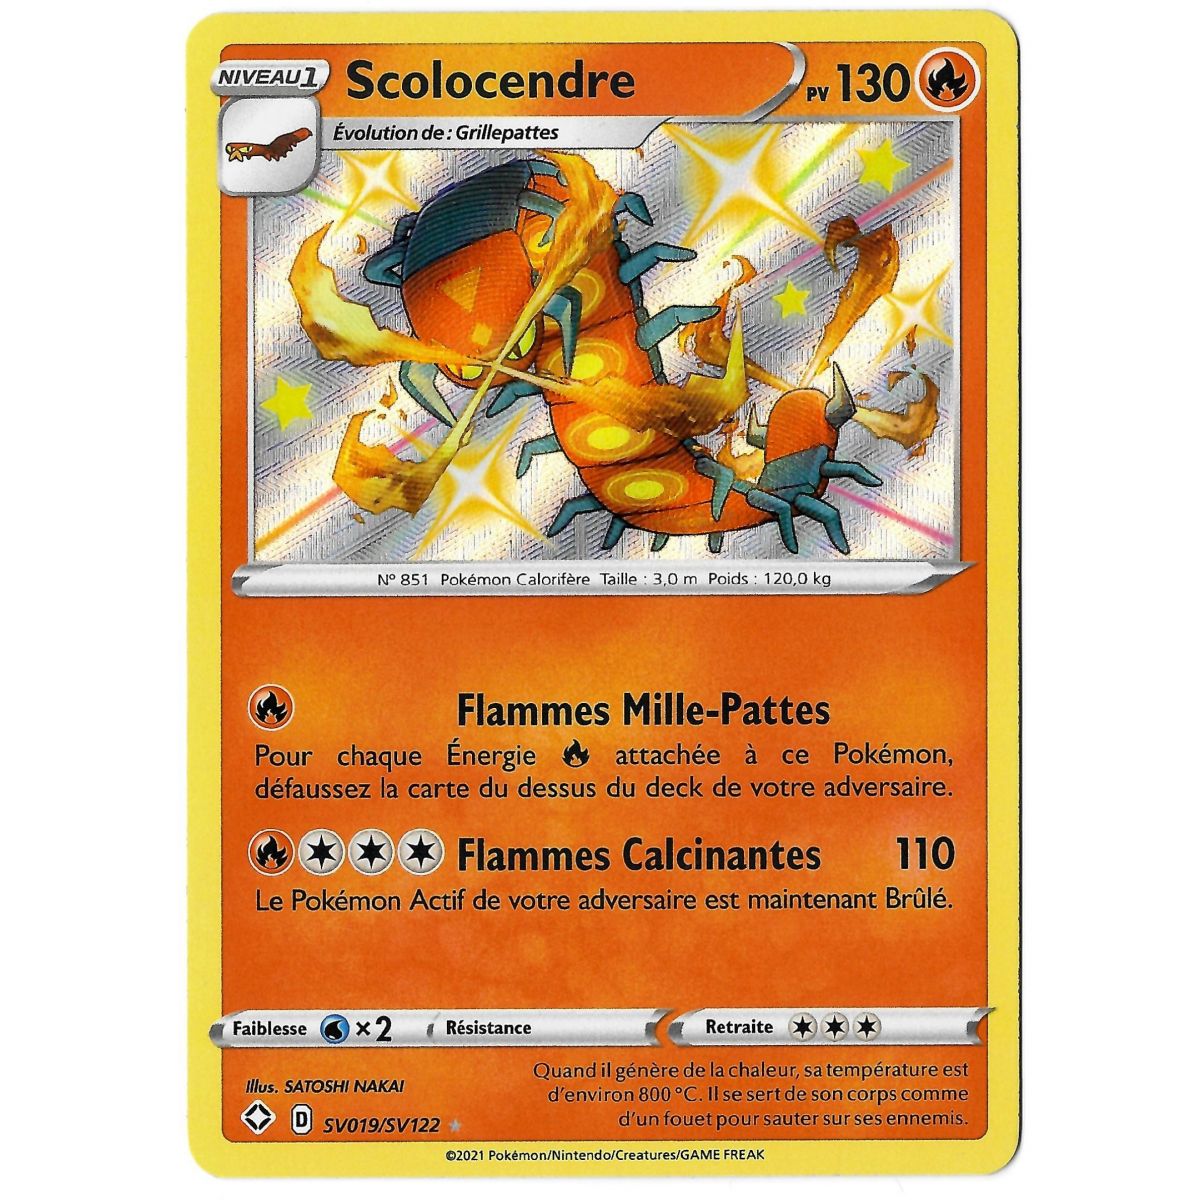 Scolocendre - Shiny SV019/SV122 - Sword and Shield Radiant Destiny